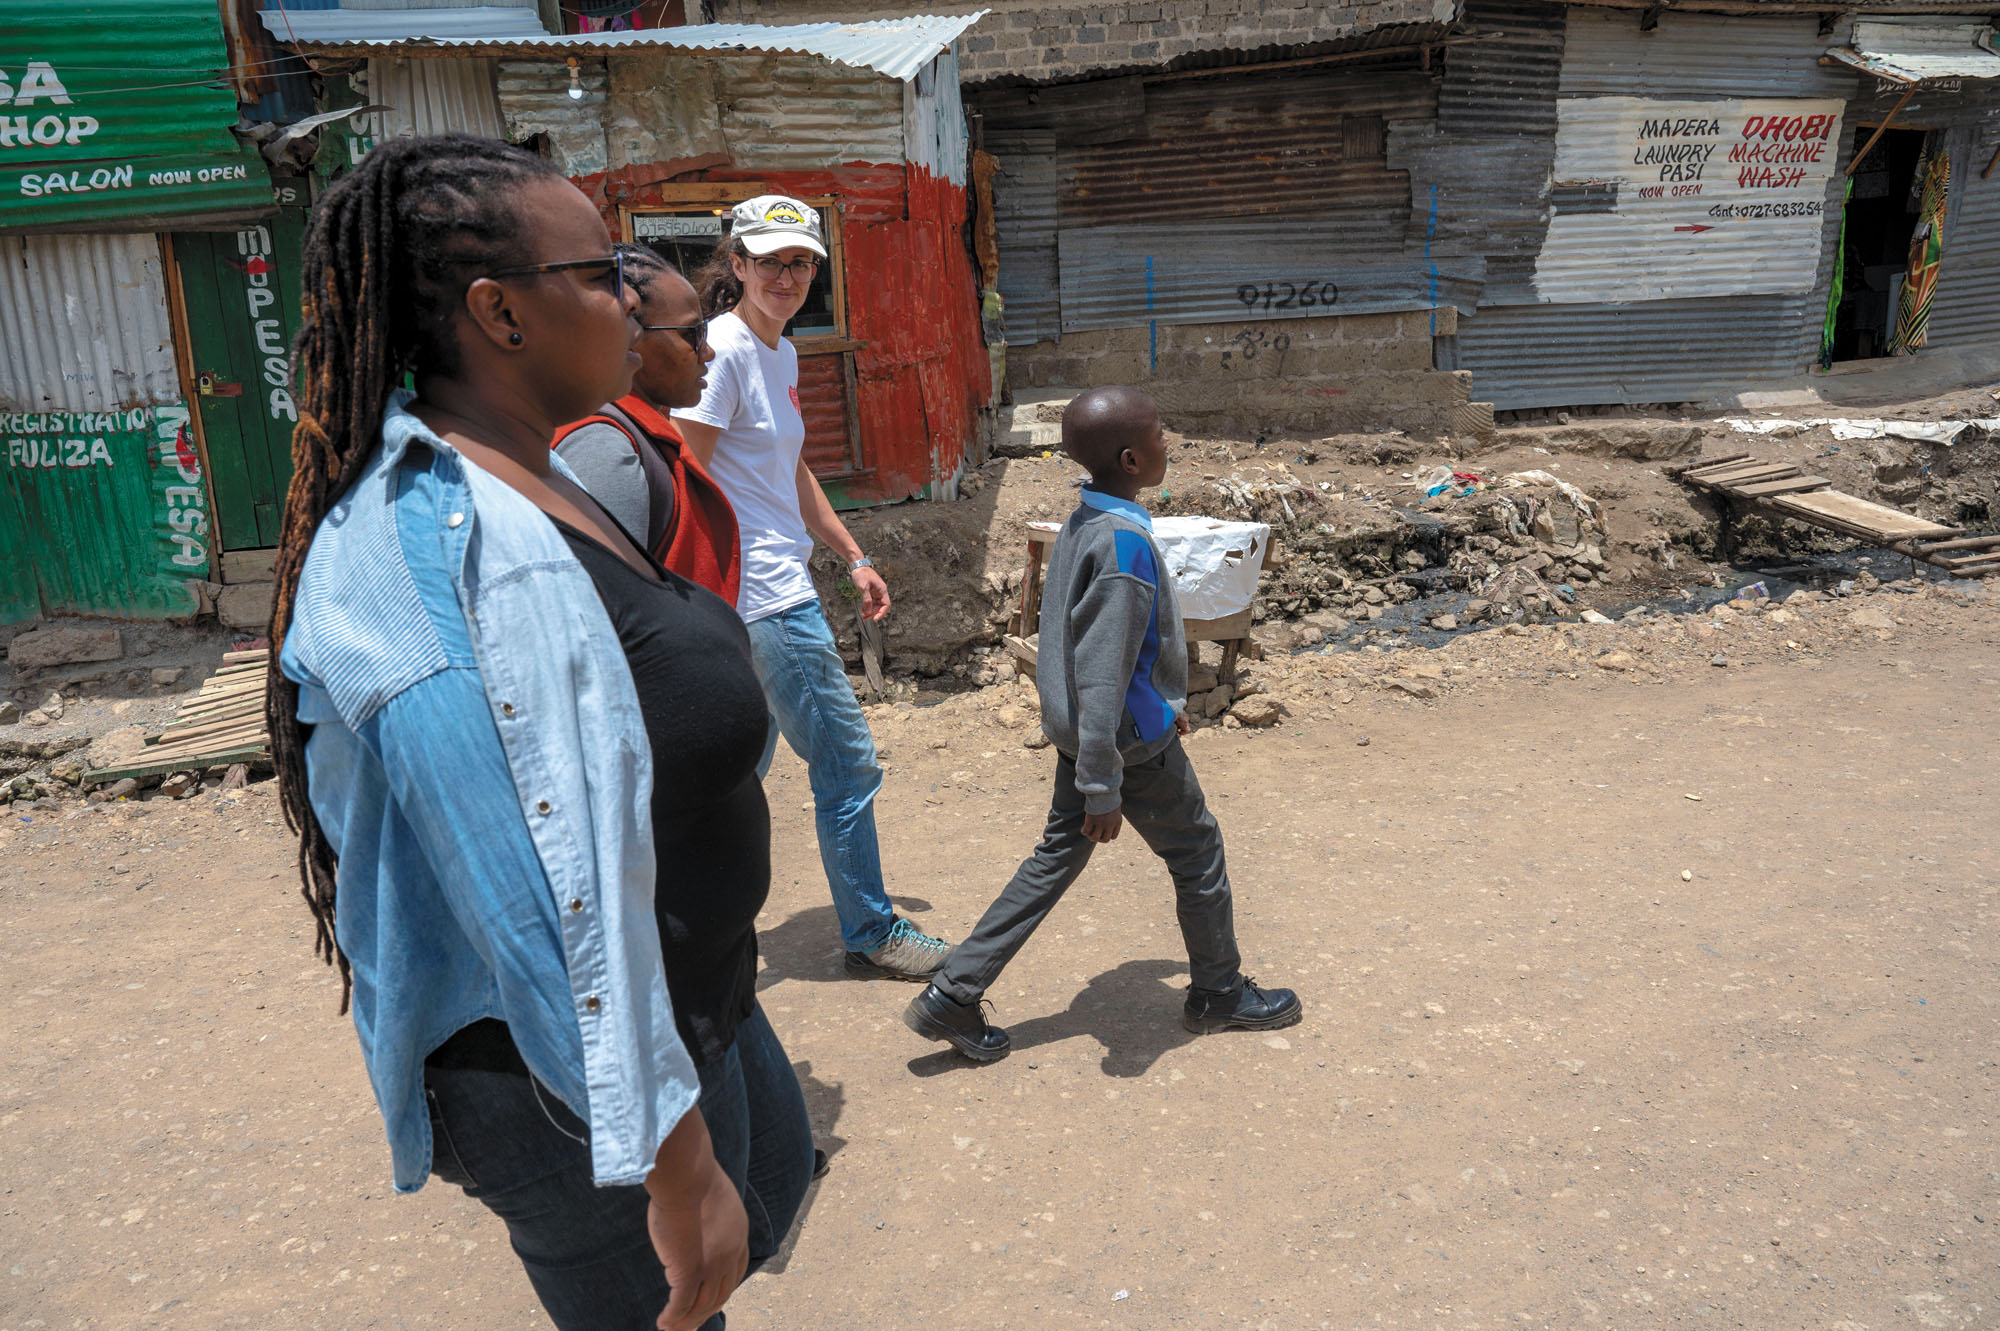 Der 11-jährige Stanley führt die kleine Gruppe durch das Slum zu seinem Elternhaus.